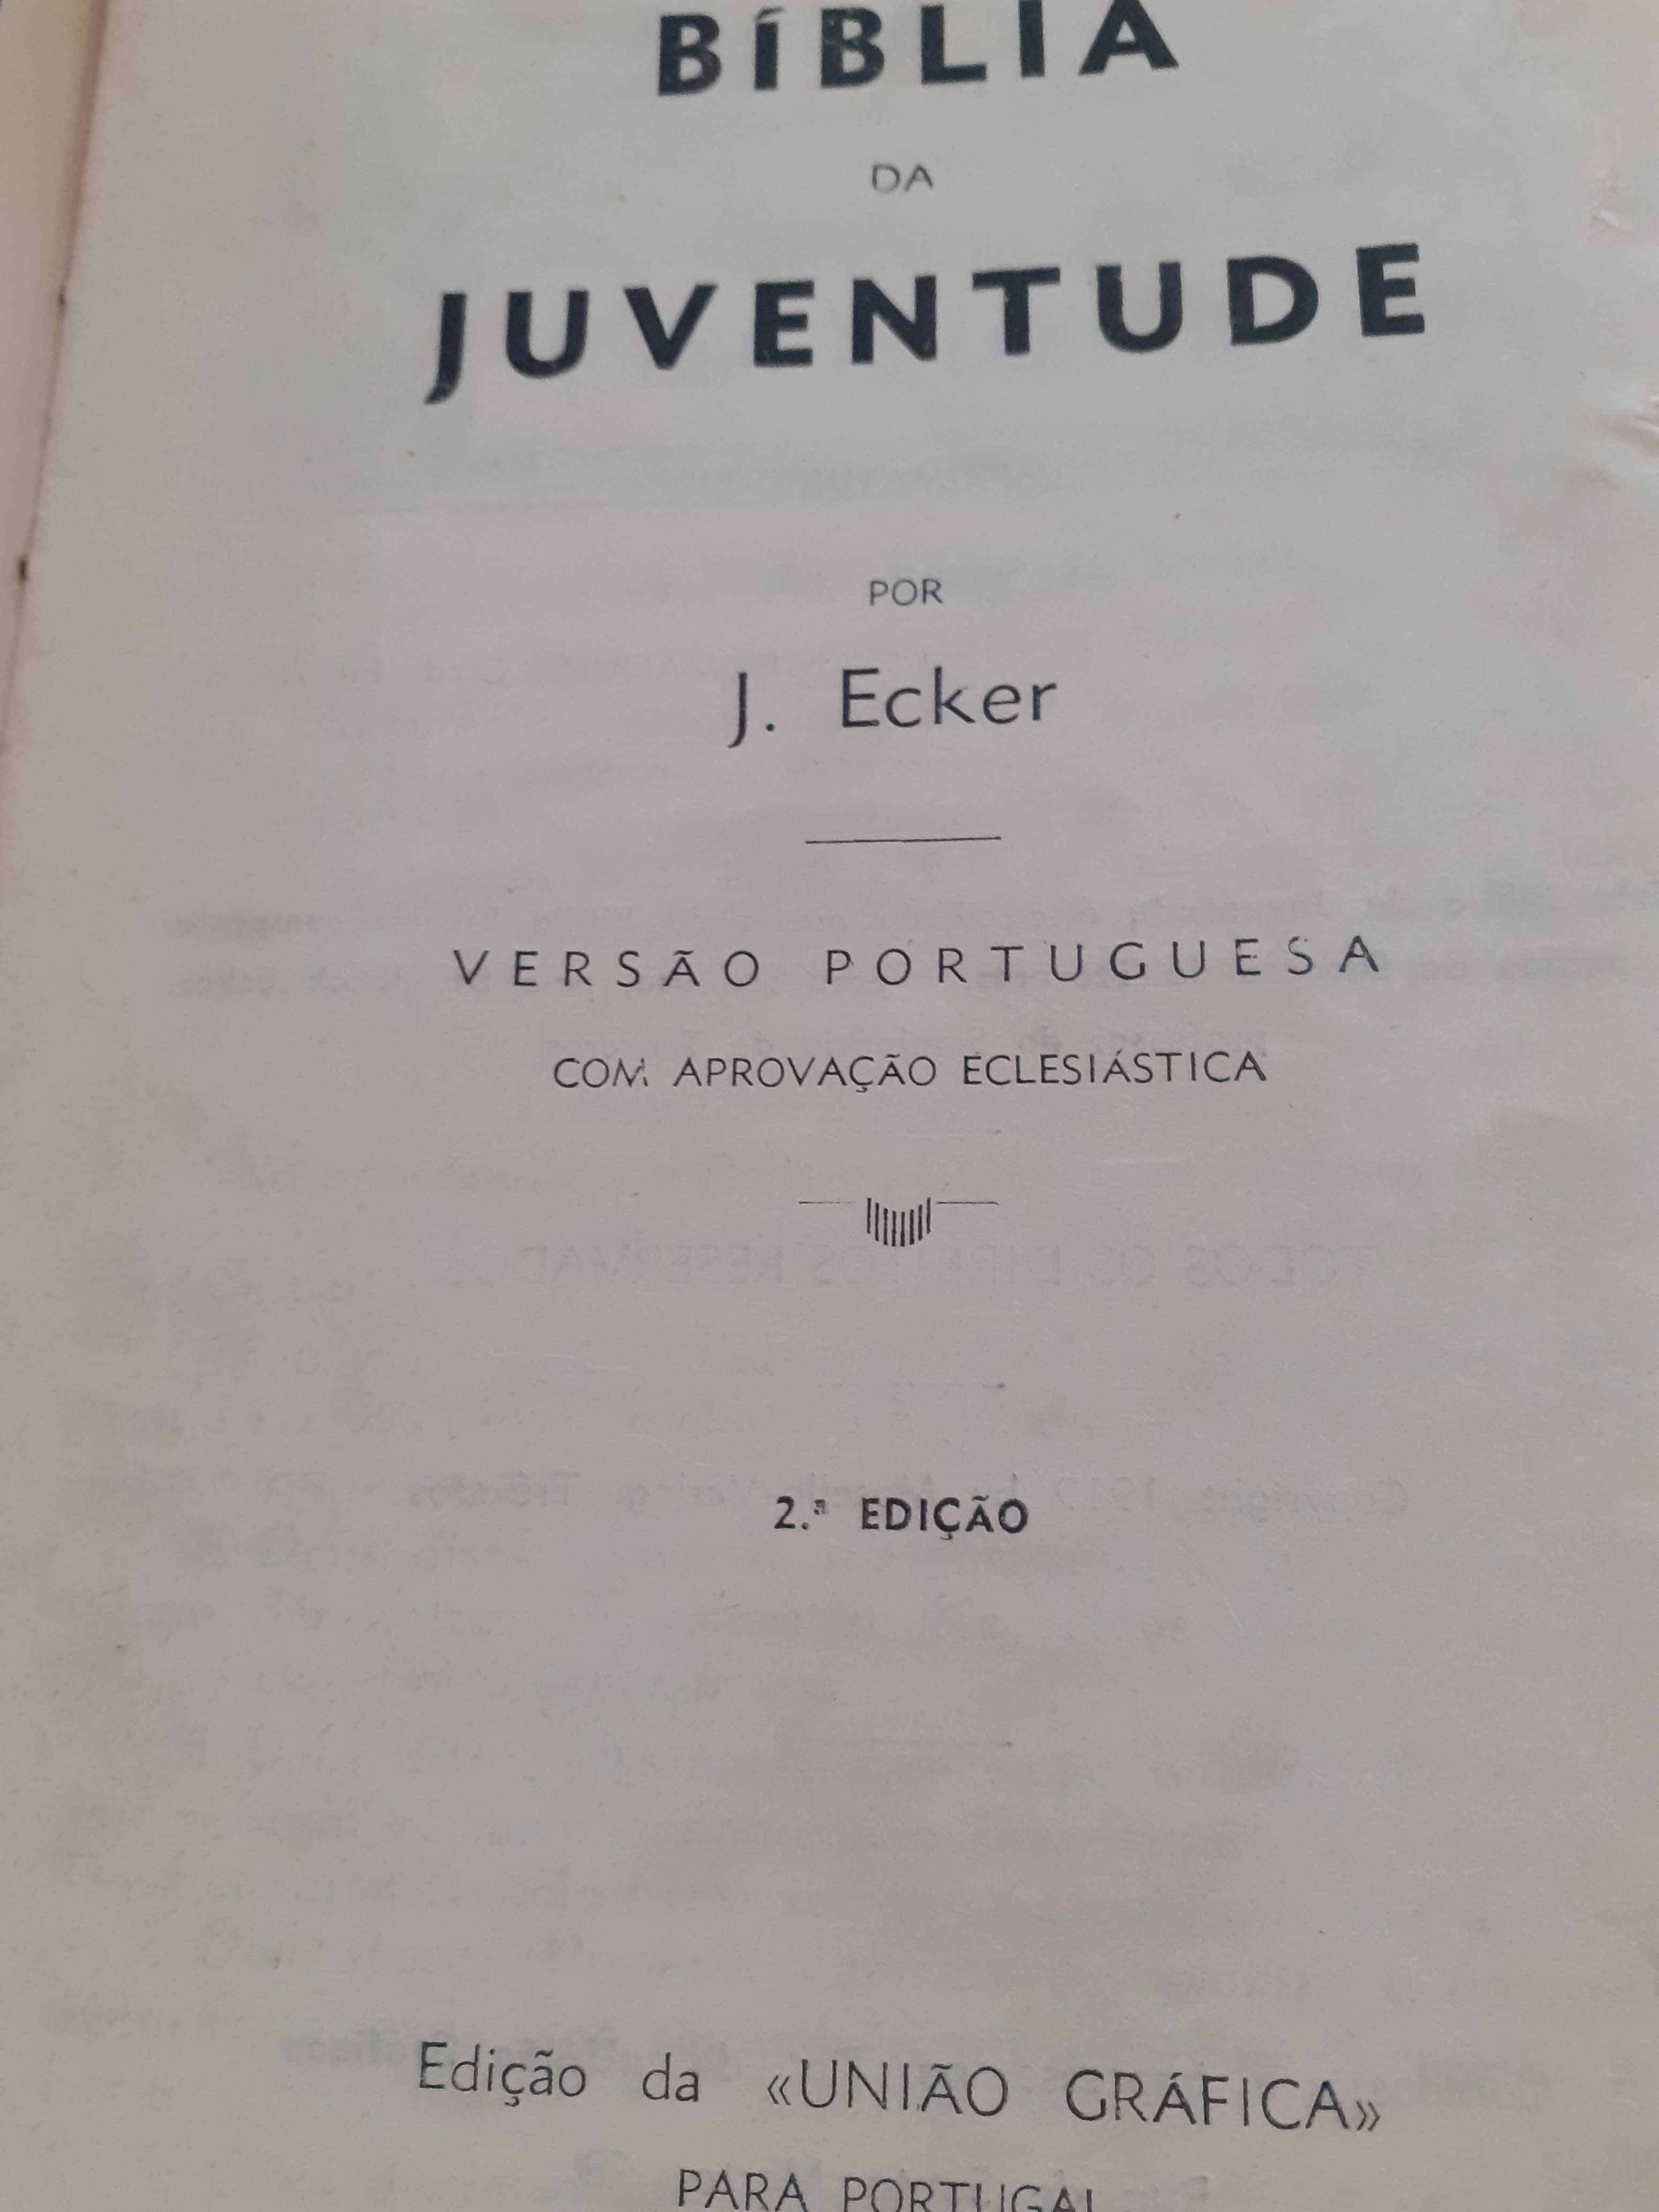 Livro "Bíblia da Juventude", de J. Ecker (1942)